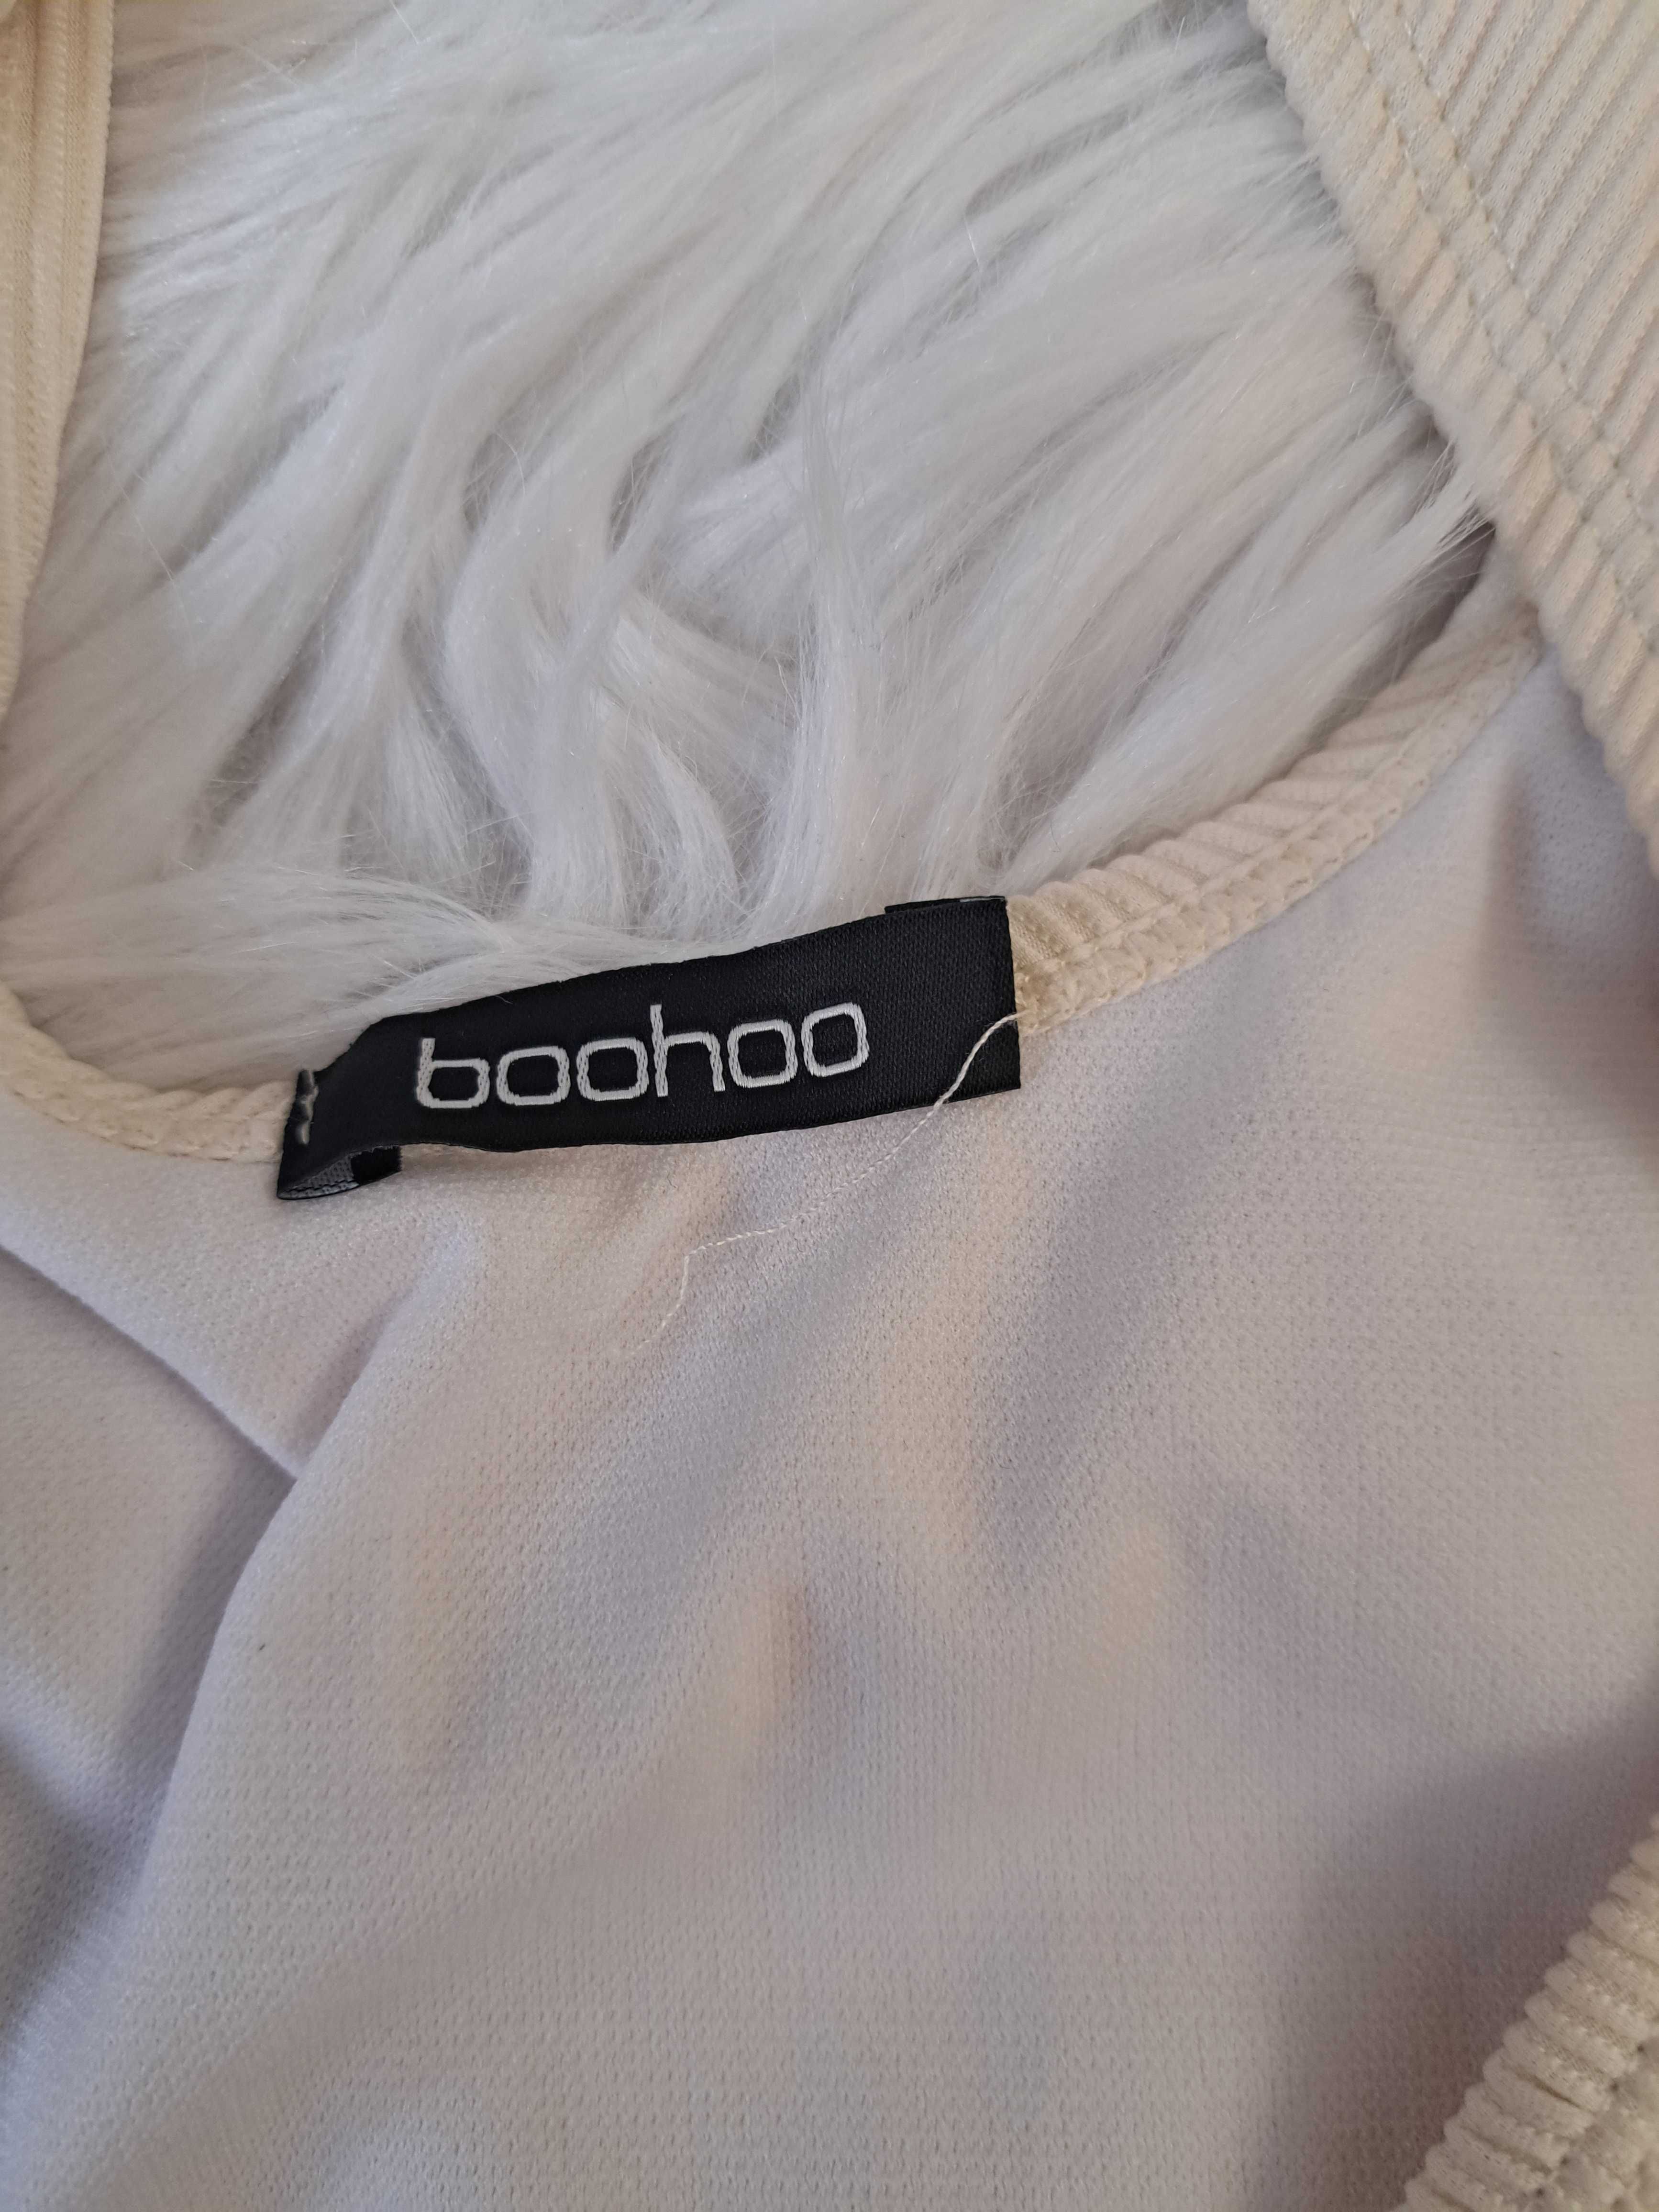 Strój kąpielowy jednoczęściowy kremowy marki Booho rozmiar XXL